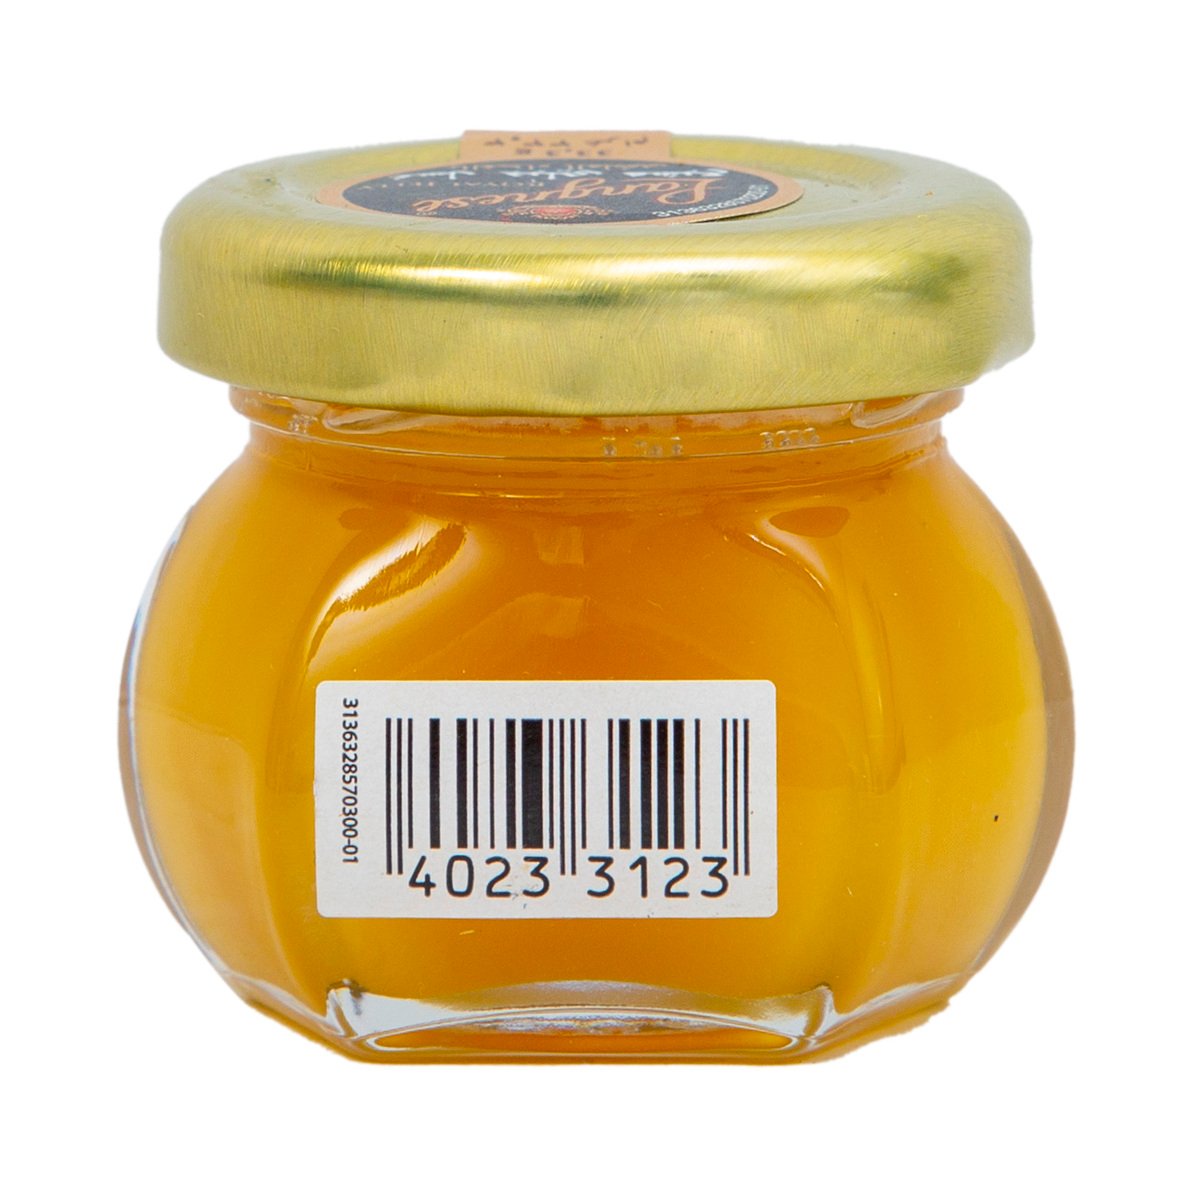 لانجنيز عسل جبلي مشبع بالغذاء الملكي 33.3 جم